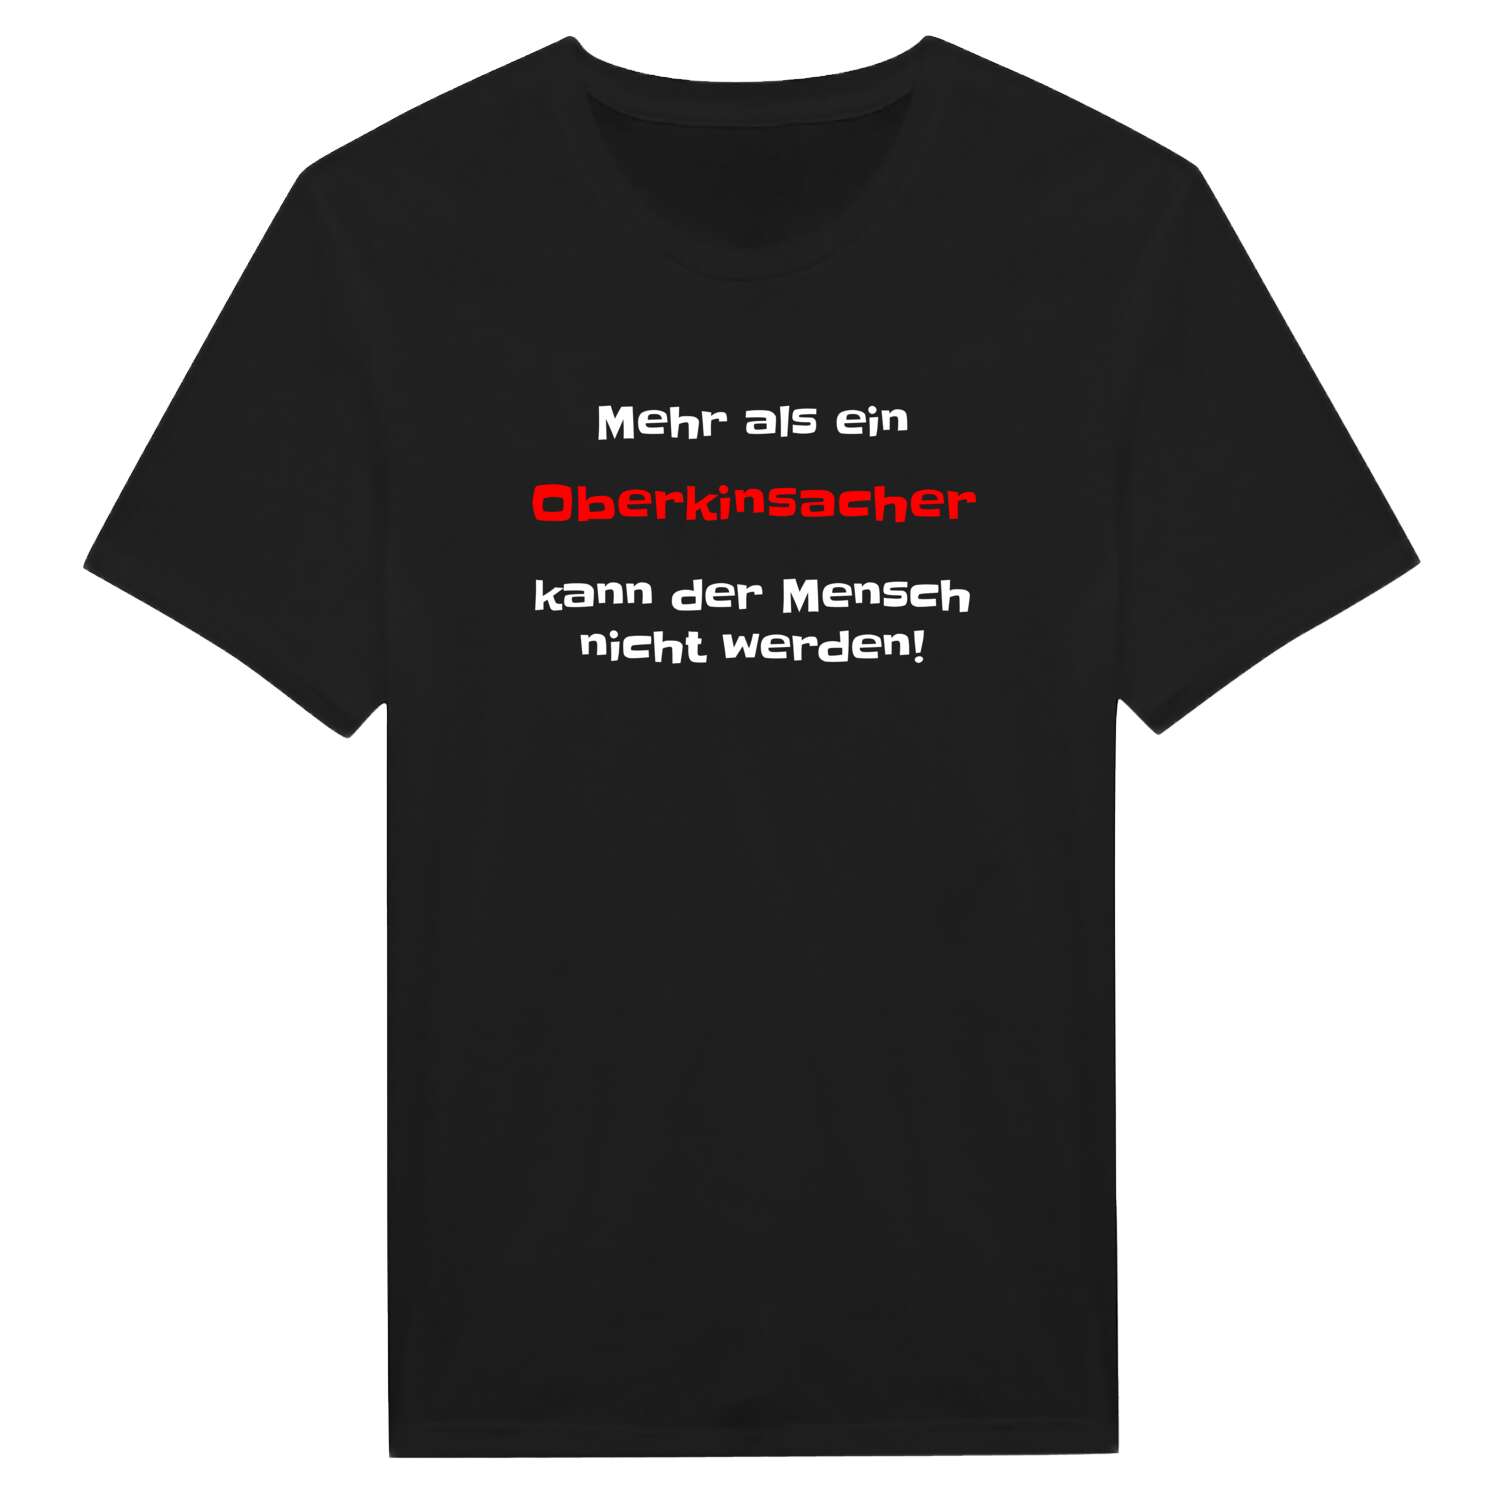 Oberkinsach T-Shirt »Mehr als ein«